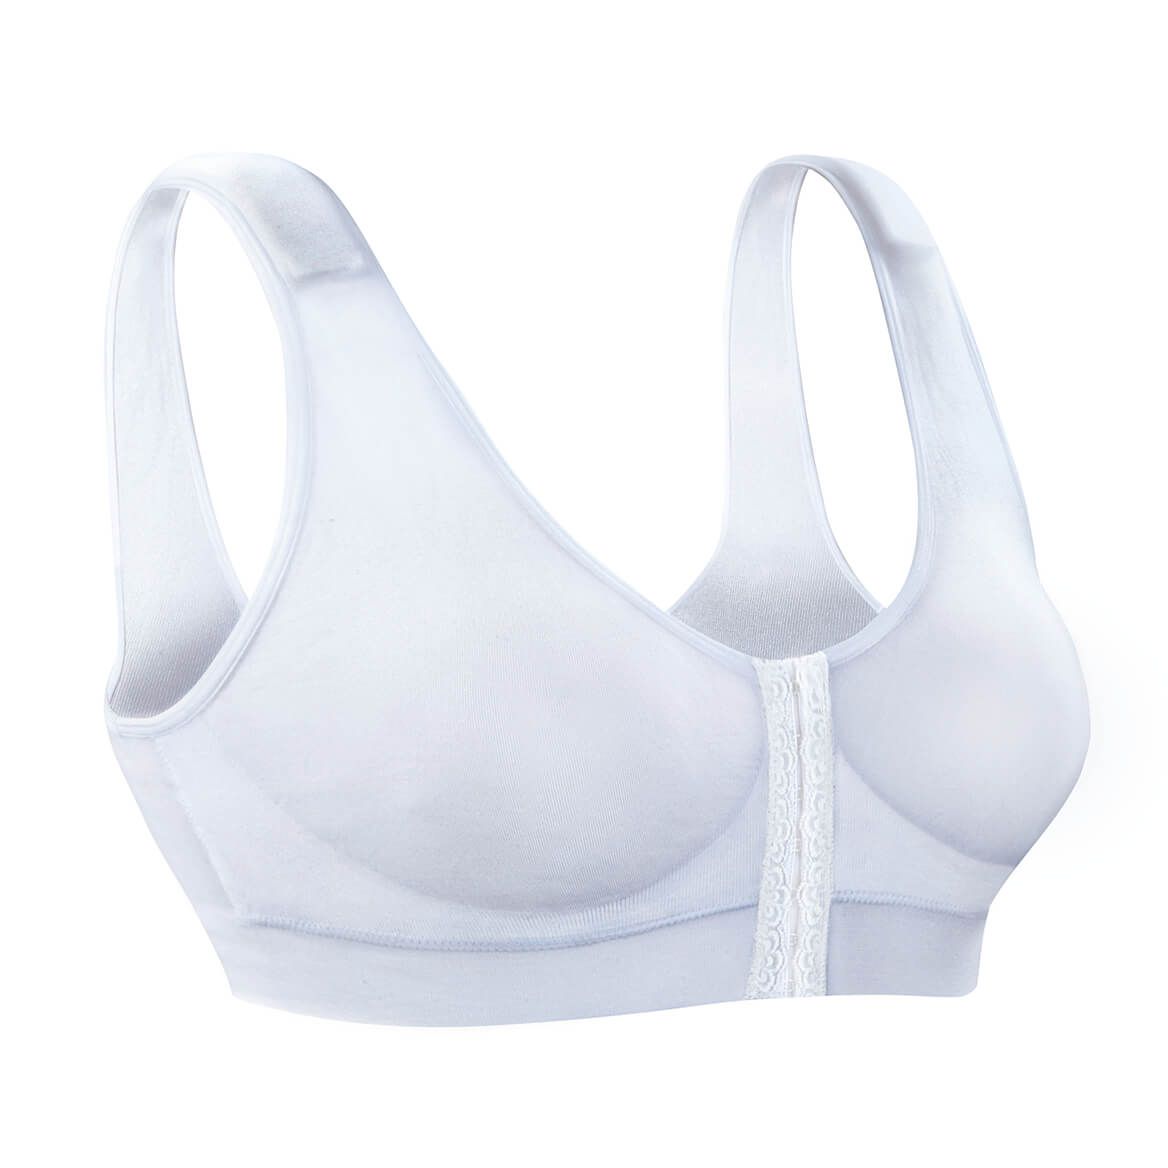 Primo Comfort - Home  Lace bra, Most comfortable bra, Bra